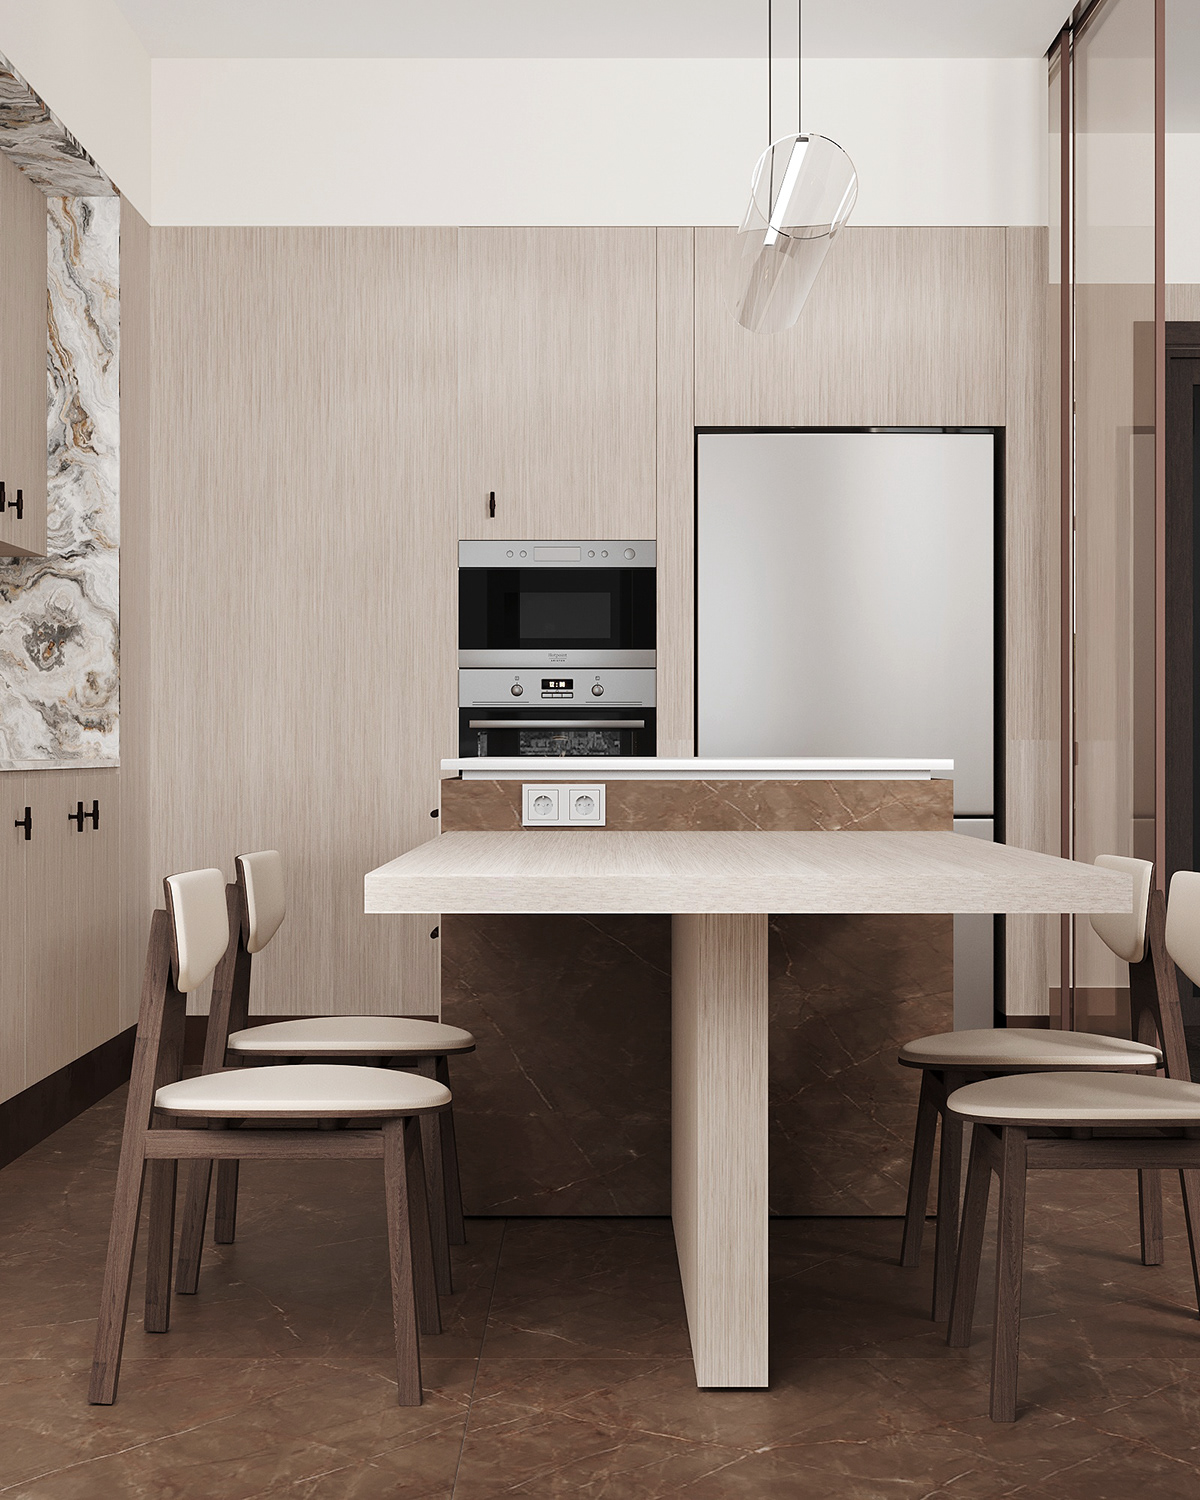 design Interior kitchen